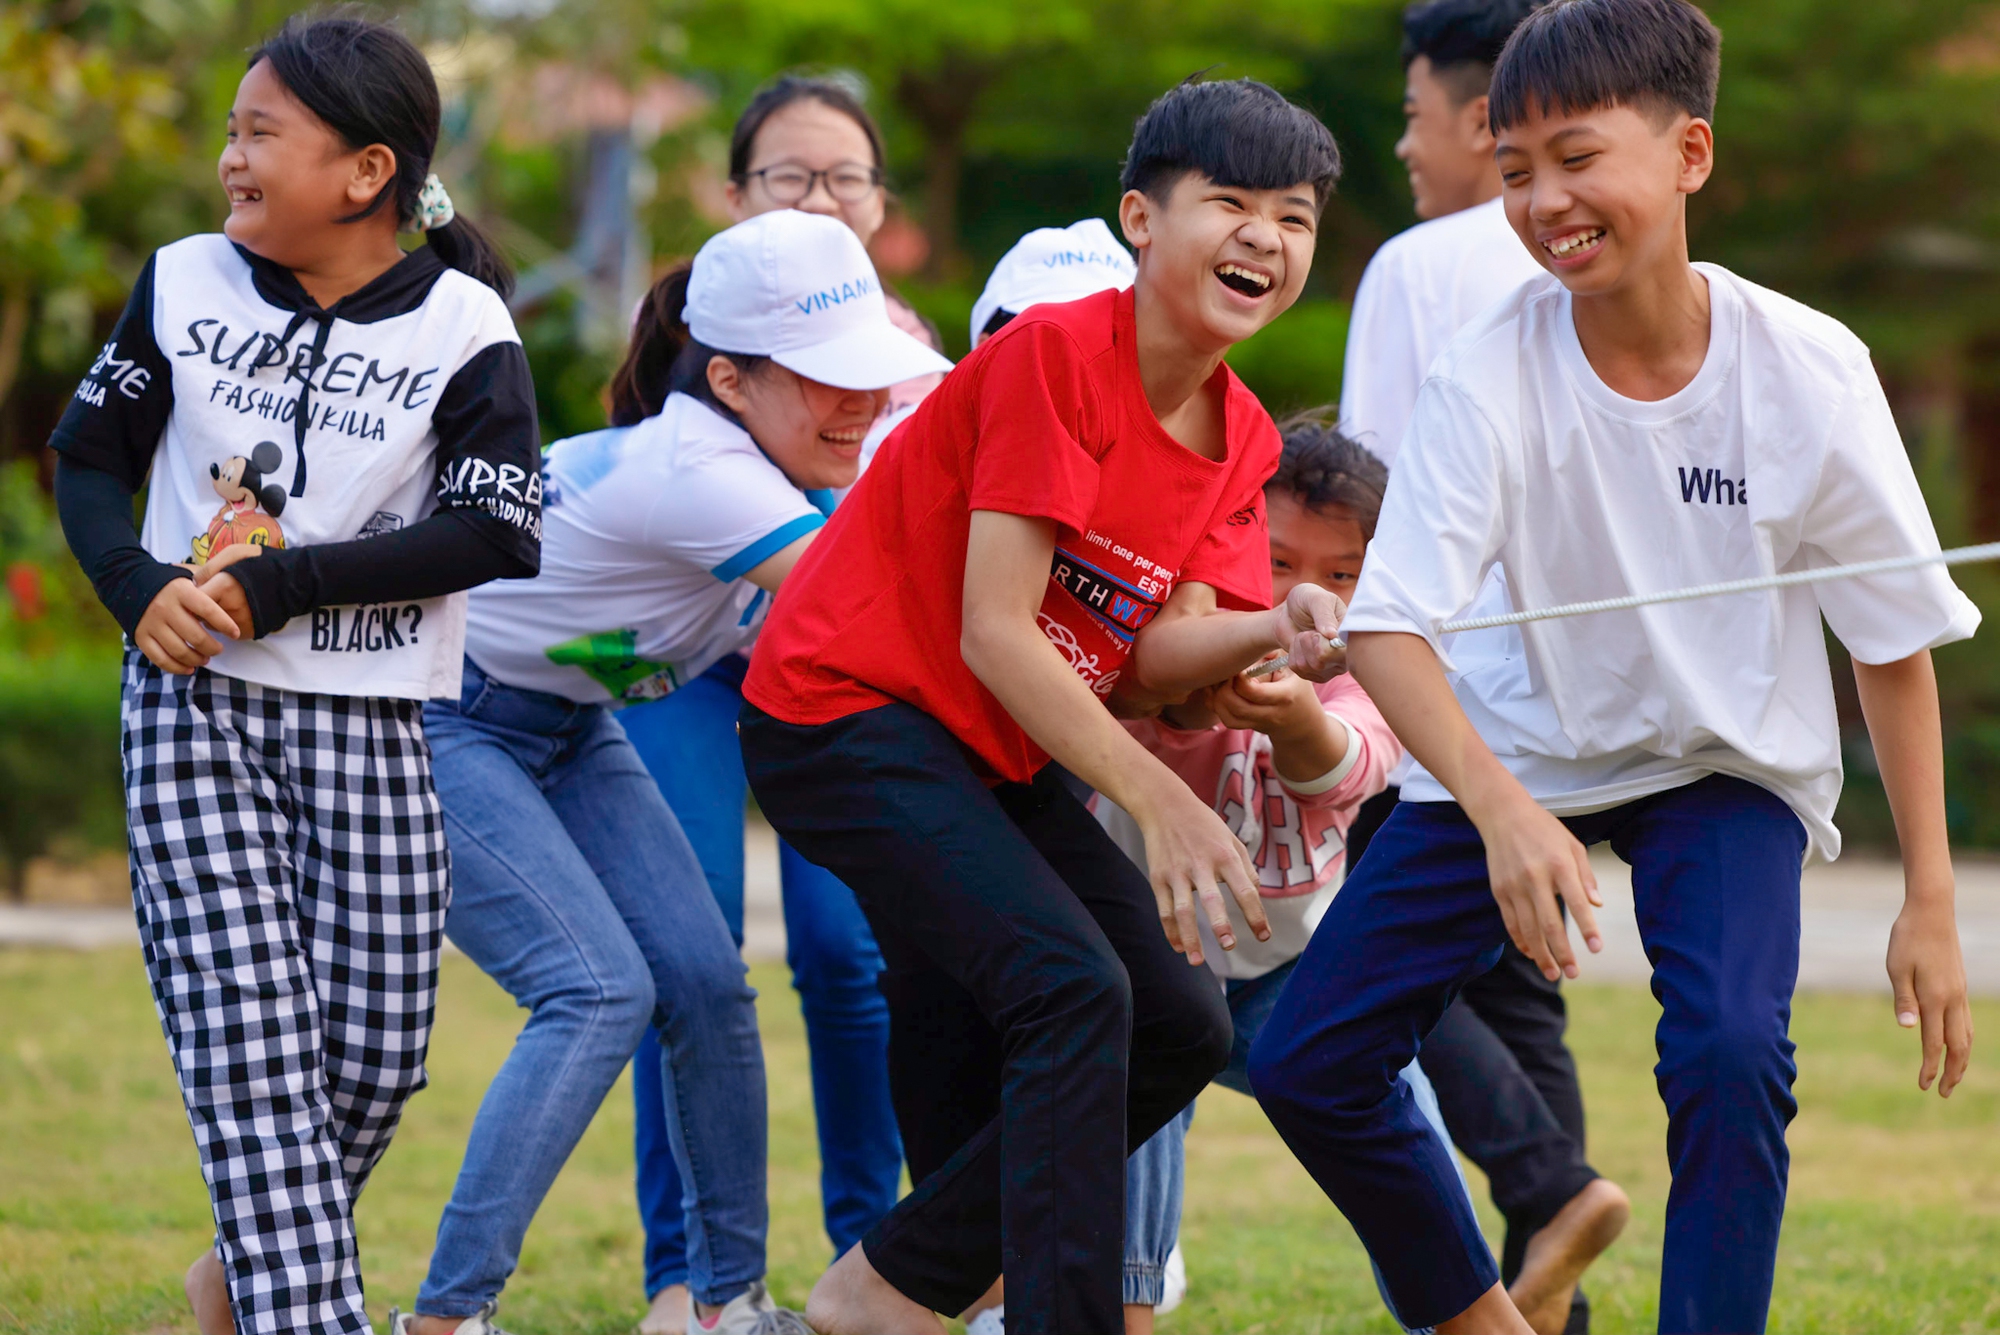 Quỹ sữa Vươn cao Việt Nam chứa đựng tình cảm yêu thương và hy vọng lan tỏa tới những gia đình nghèo neo đơn, đặc biệt là trẻ em. Hãy cùng xem những hình ảnh tuyệt đẹp và cảm thấy niềm vui tràn đầy trong trái tim của mỗi người đàn ông Việt Nam, với hy vọng đem lại những điều tốt đẹp cho cộng đồng.